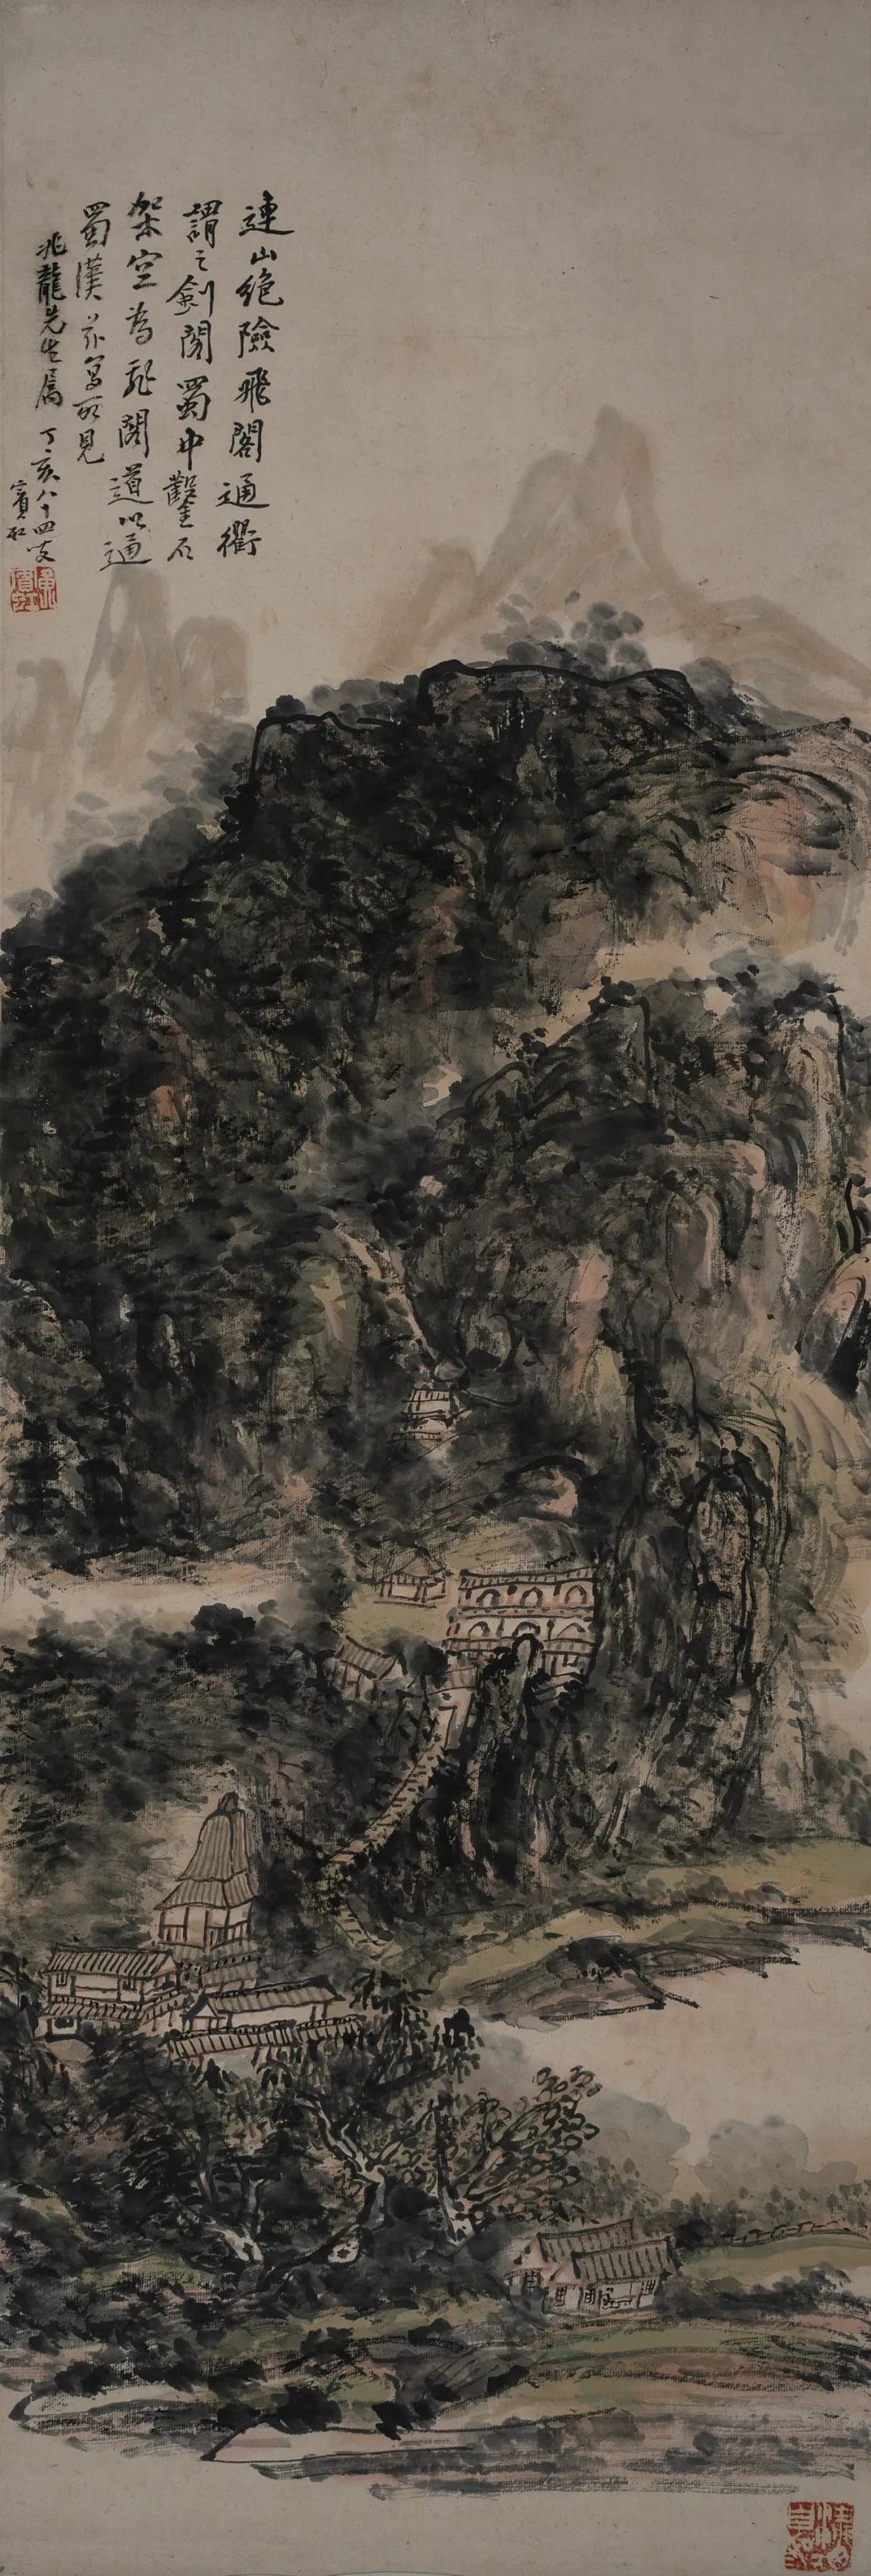 连山绝险图轴 1945年 黄宾虹 纸本水墨 95.5×32.5cm 安徽中国徽州文化博物馆藏